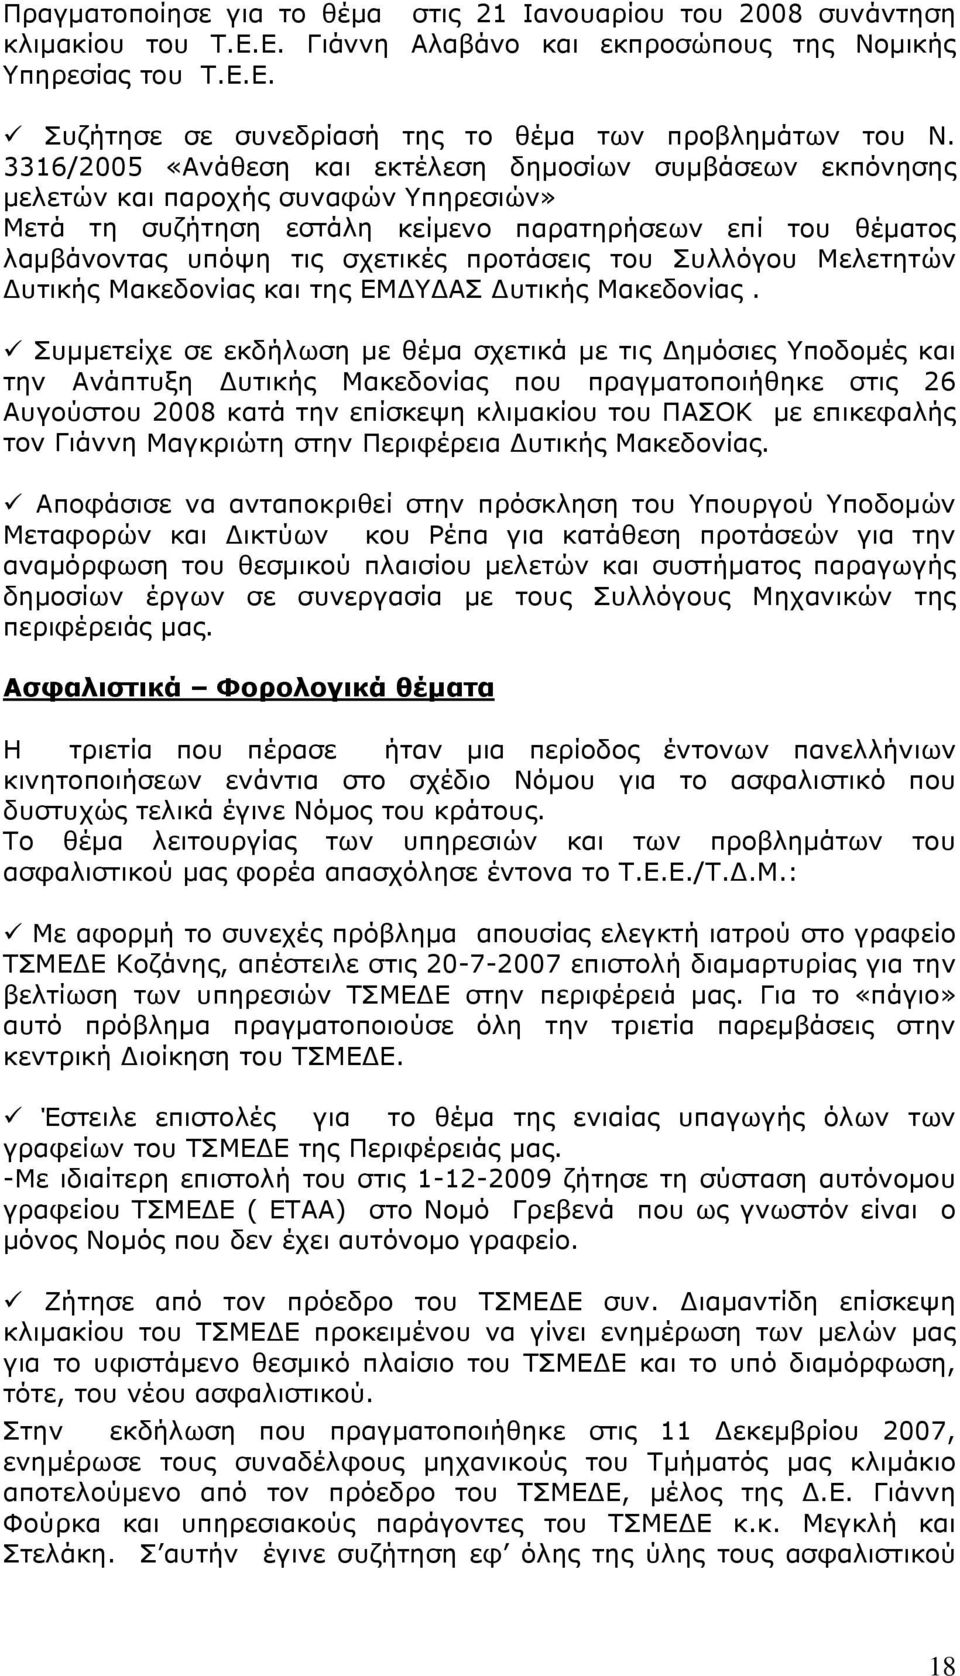 προτάσεις του Συλλόγου Μελετητών Δυτικής Μακεδονίας και της ΕΜΔΥΔΑΣ Δυτικής Μακεδονίας.